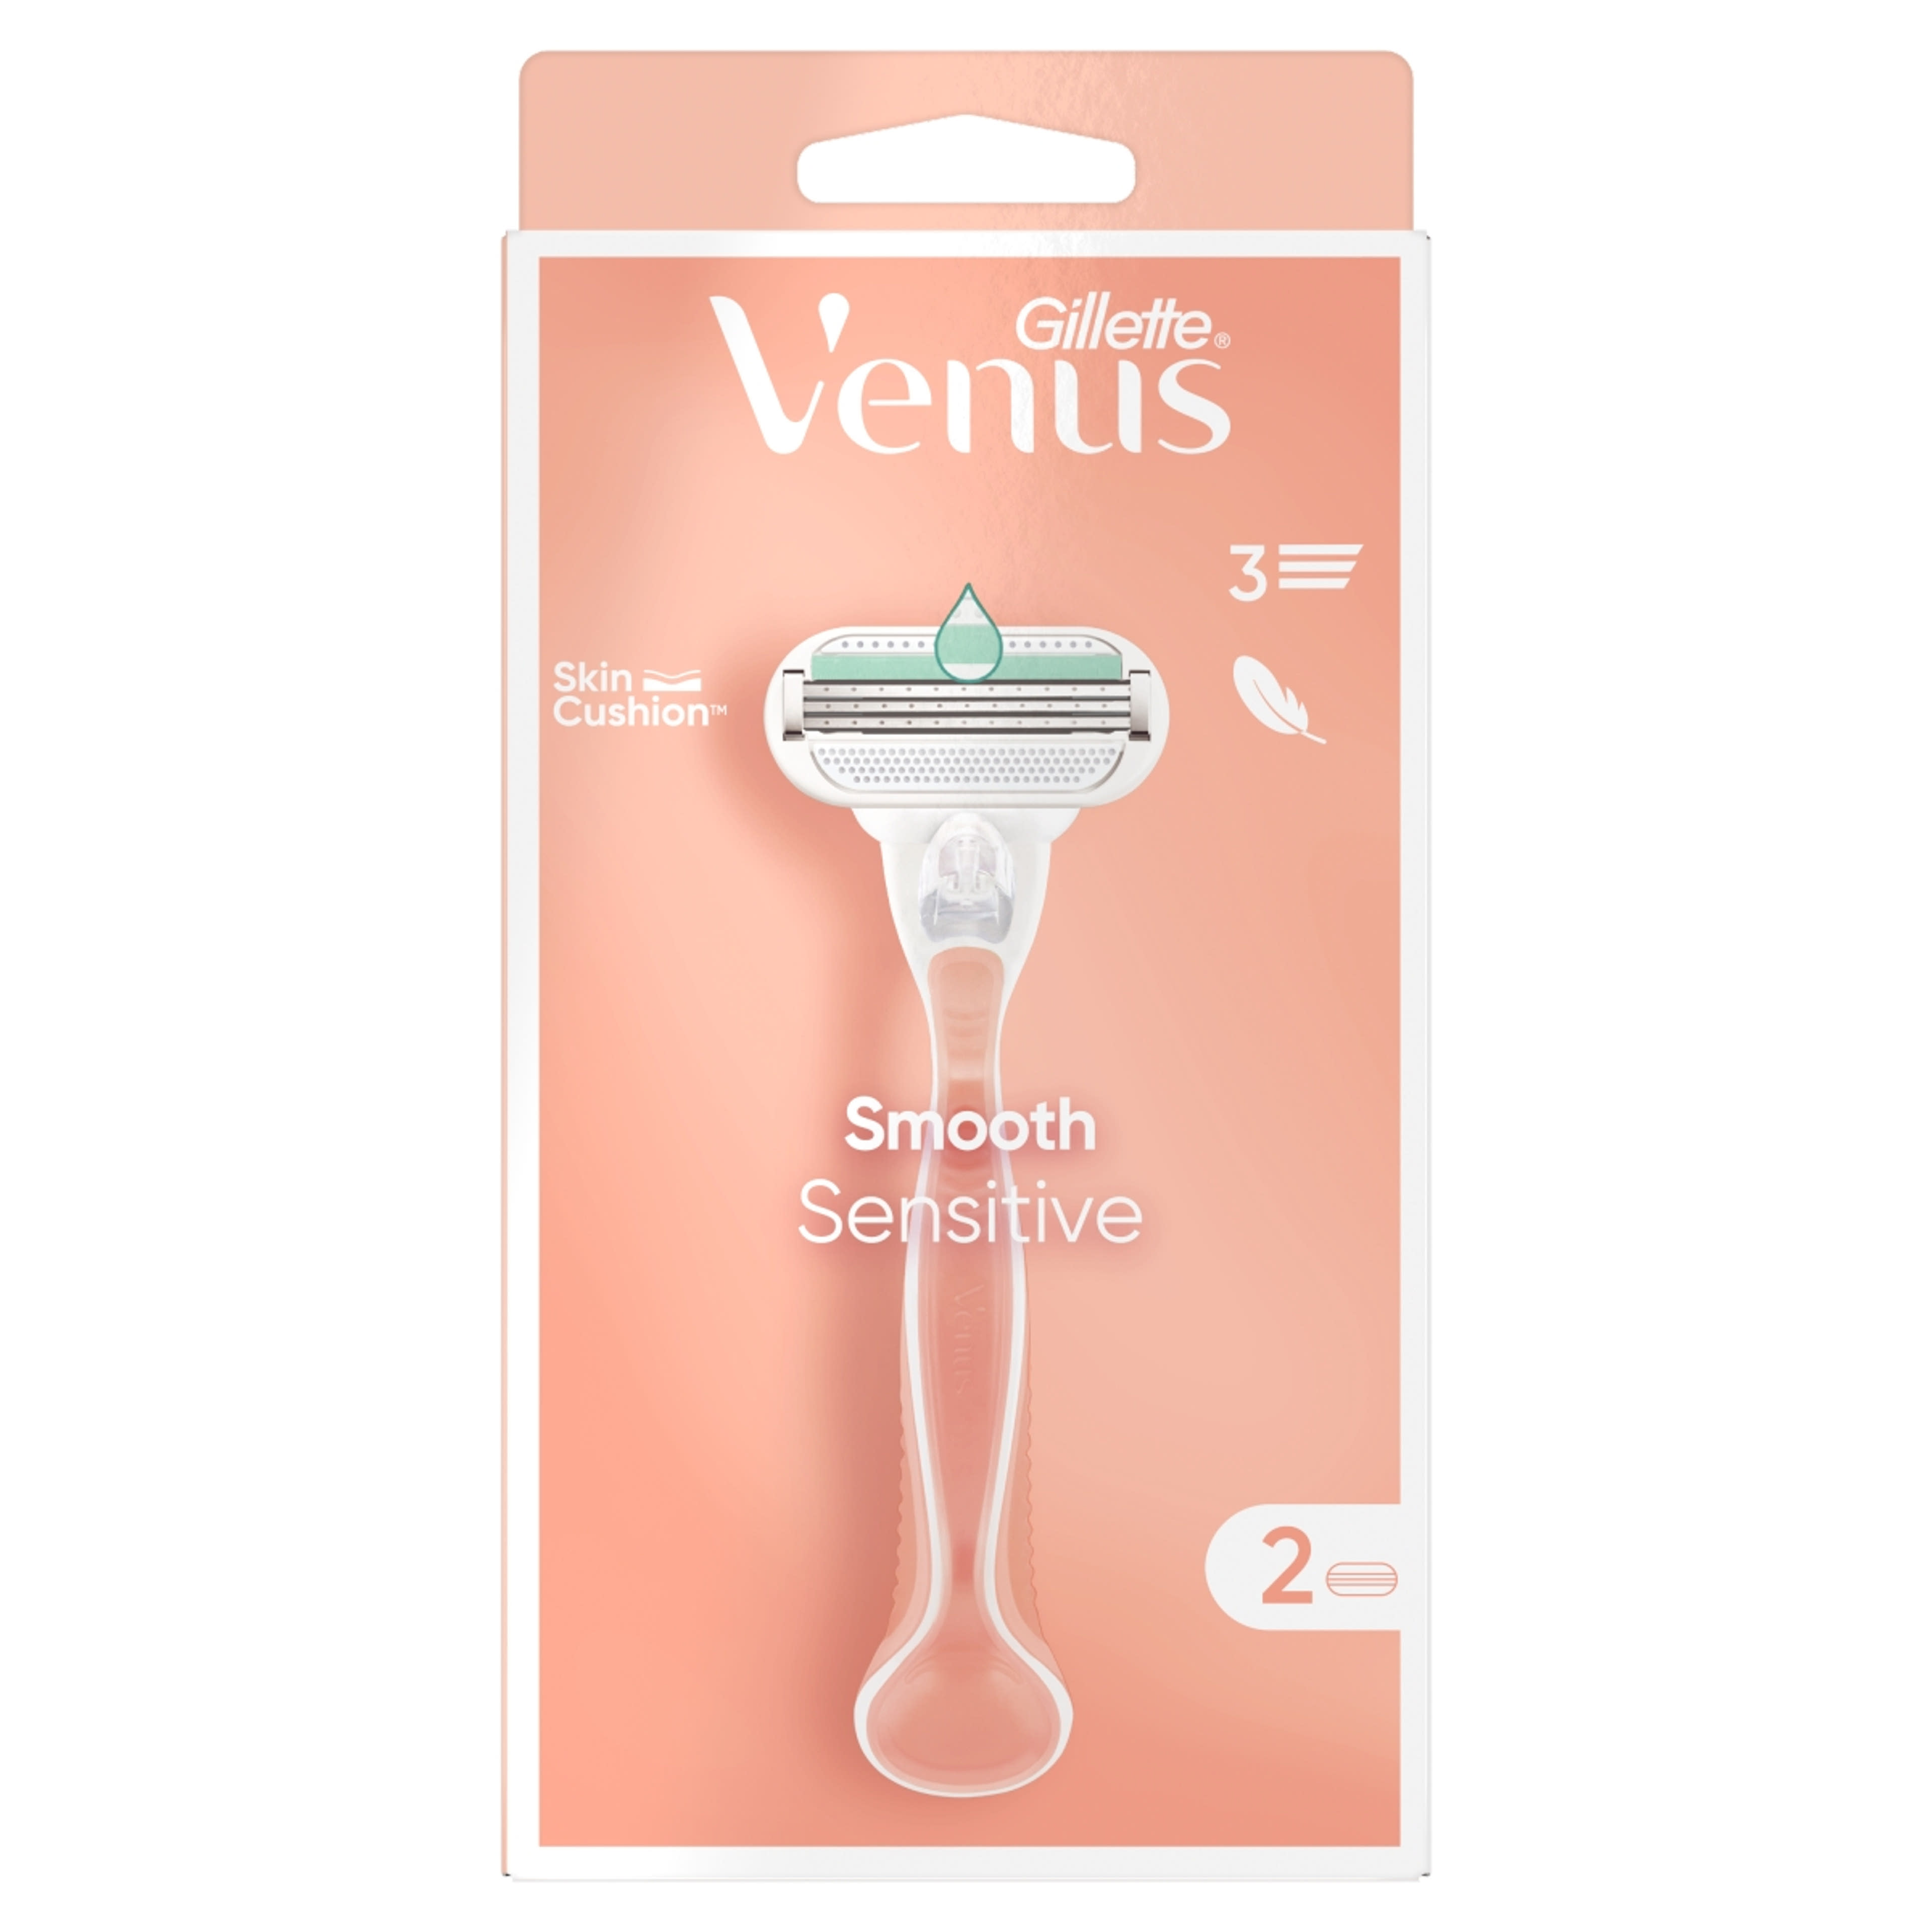 Gillette Venus Smooth Sensitive borotvakészülék 3 pengés + 2 borotvabetét - 1 db-1